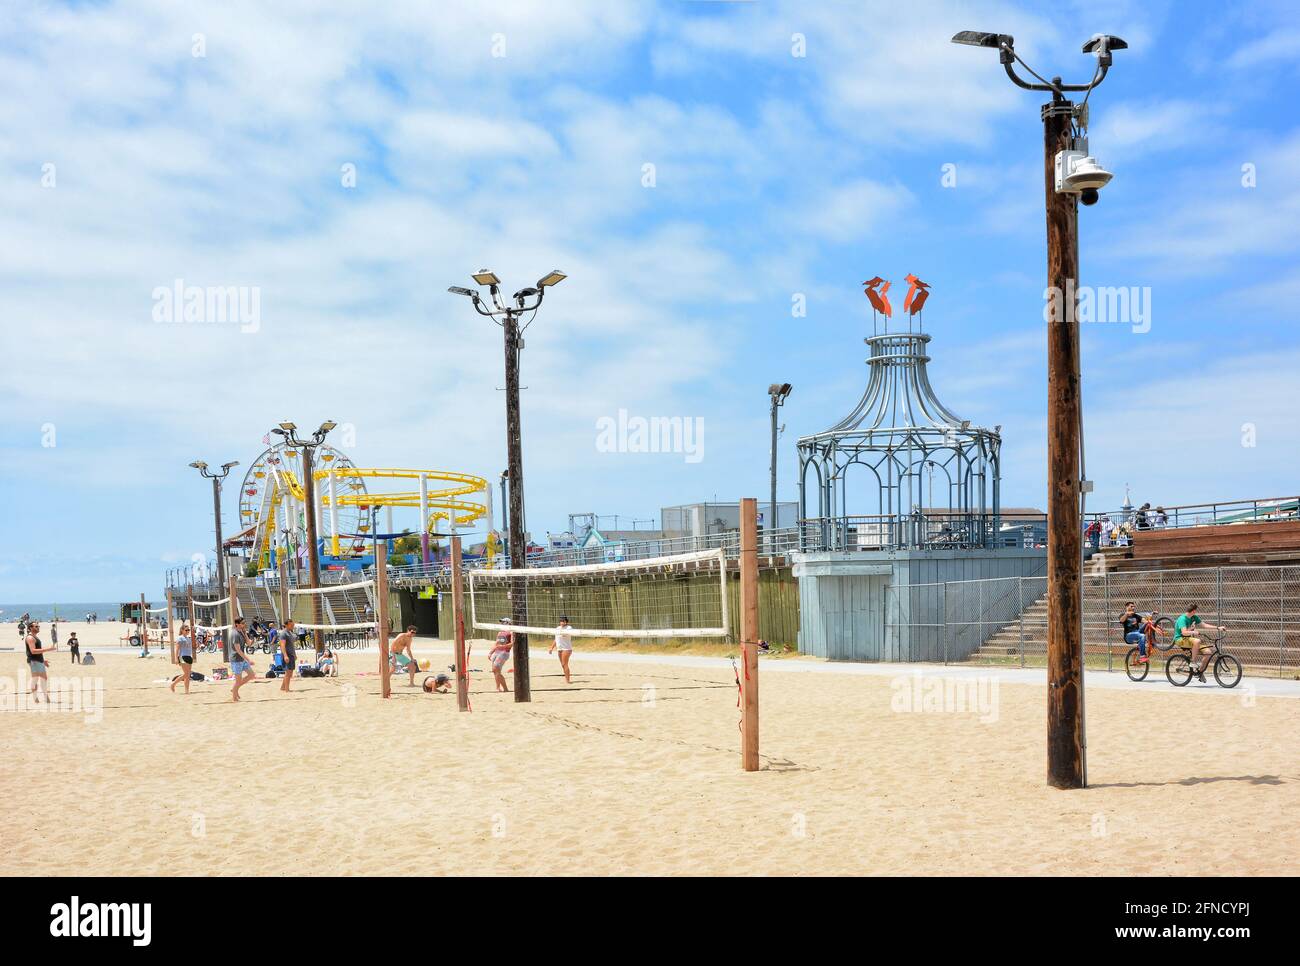 SANTA MONICA, CALIFORNIE - 15 MAI 2021 : terrains de volley-ball de plage avec terrain de jeu sur la jetée et Pacific Park en arrière-plan. Banque D'Images